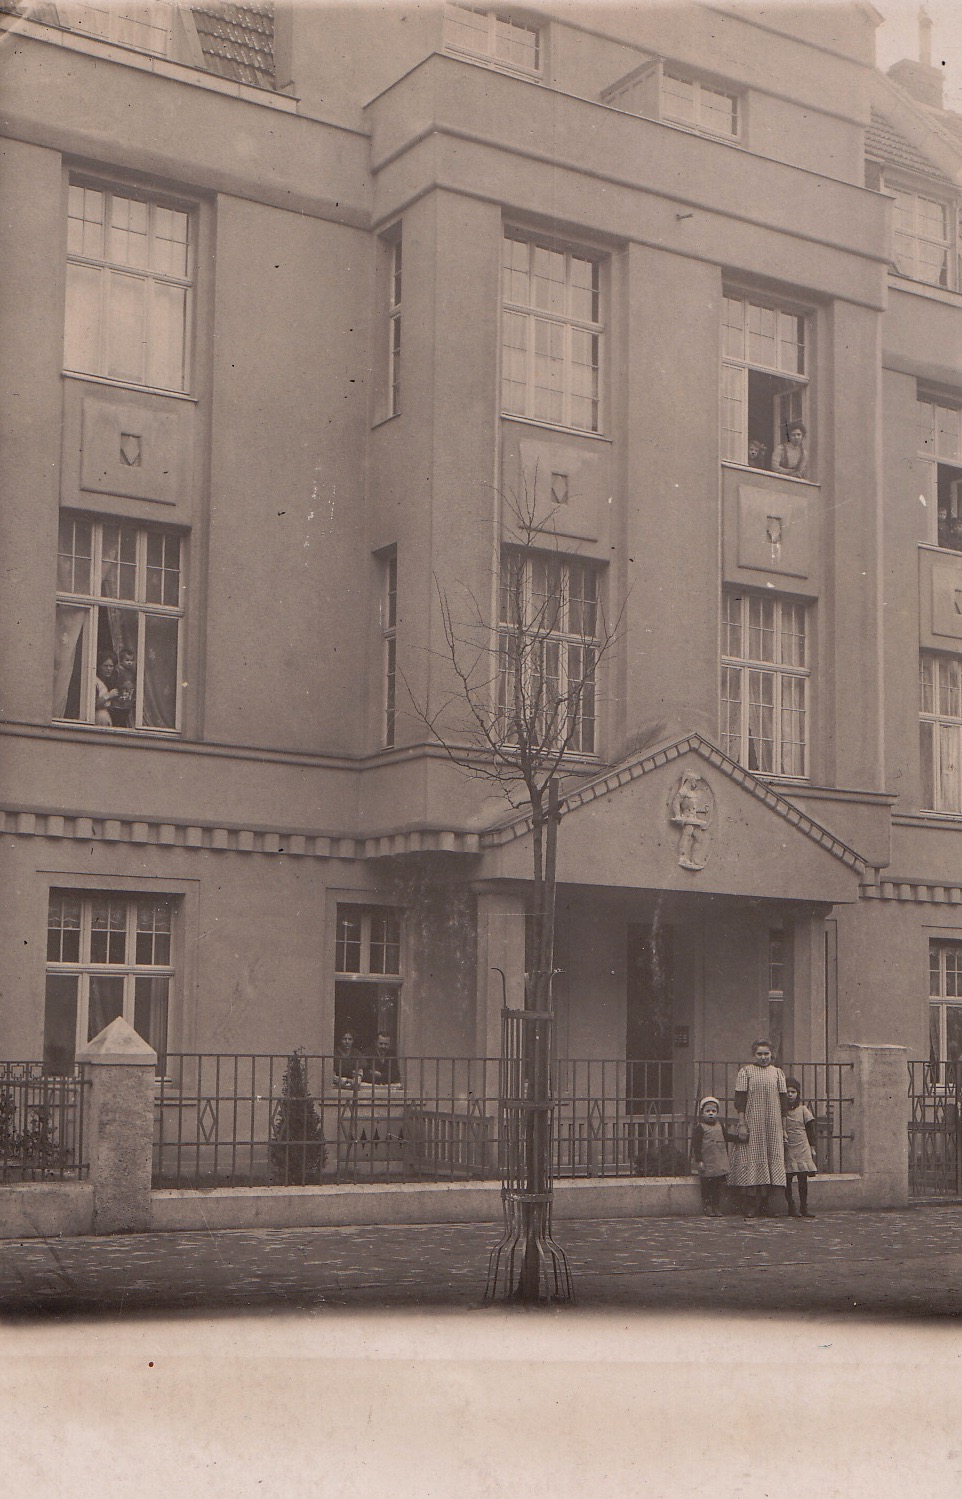 overgrootmoeder Gretchen Lehmkuhl-Leeuwarden en haar kinderen voor hun huis aan de Teutoburgerstrasse 24 in Keulen (D). Het huis is zwaar beschadigd in de tweede wereldoorlog en na de oorlog afgebroken.